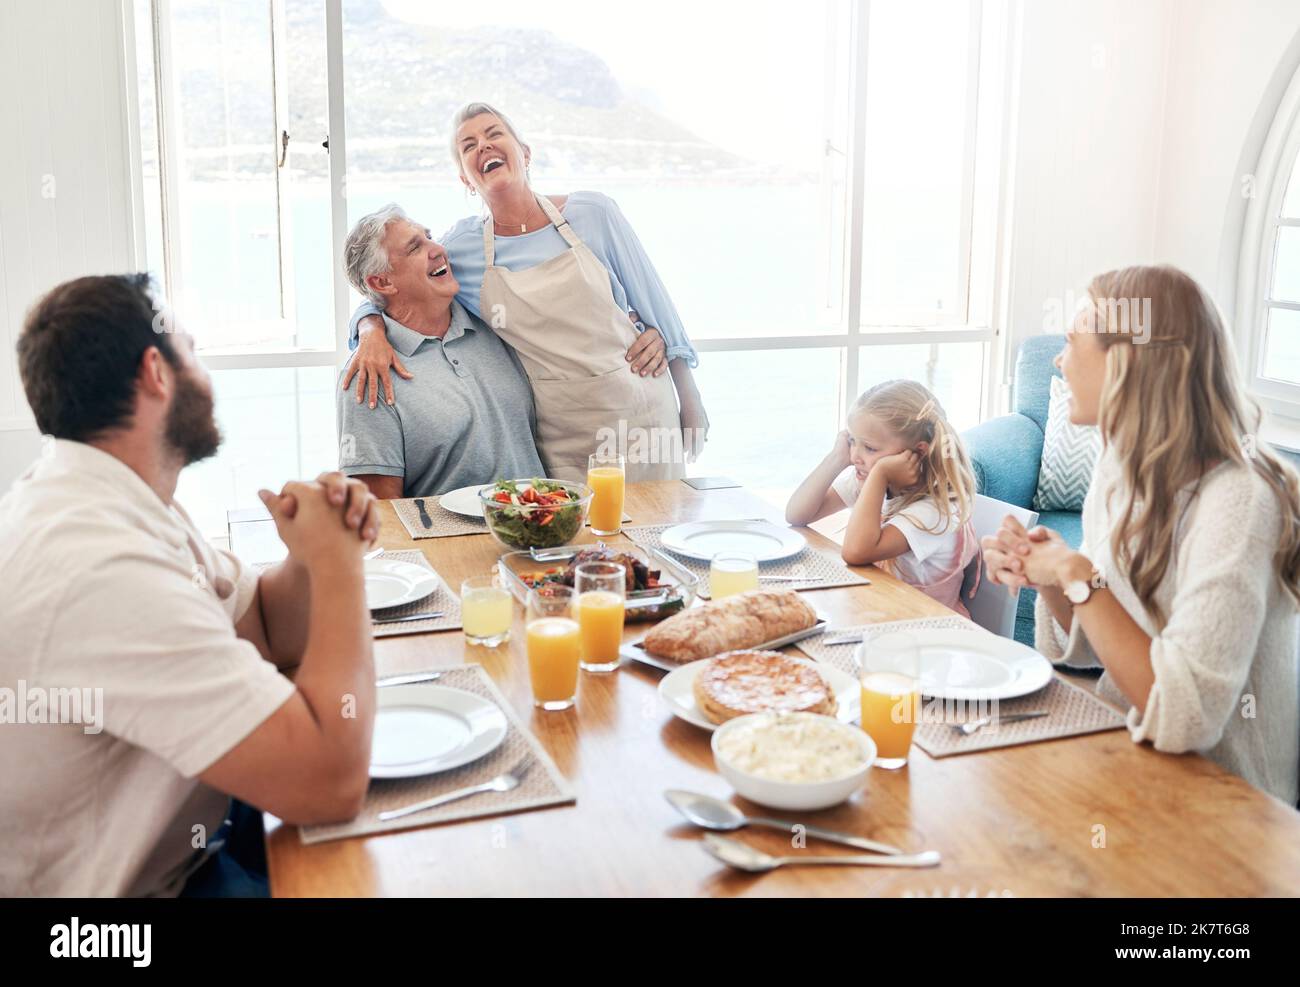 Frühstück, Kommunikation und große Familie essen zusammen am Esstisch ihres Hauses. Ältere Männer und Frauen sprechen über lustige Geschichte Stockfoto